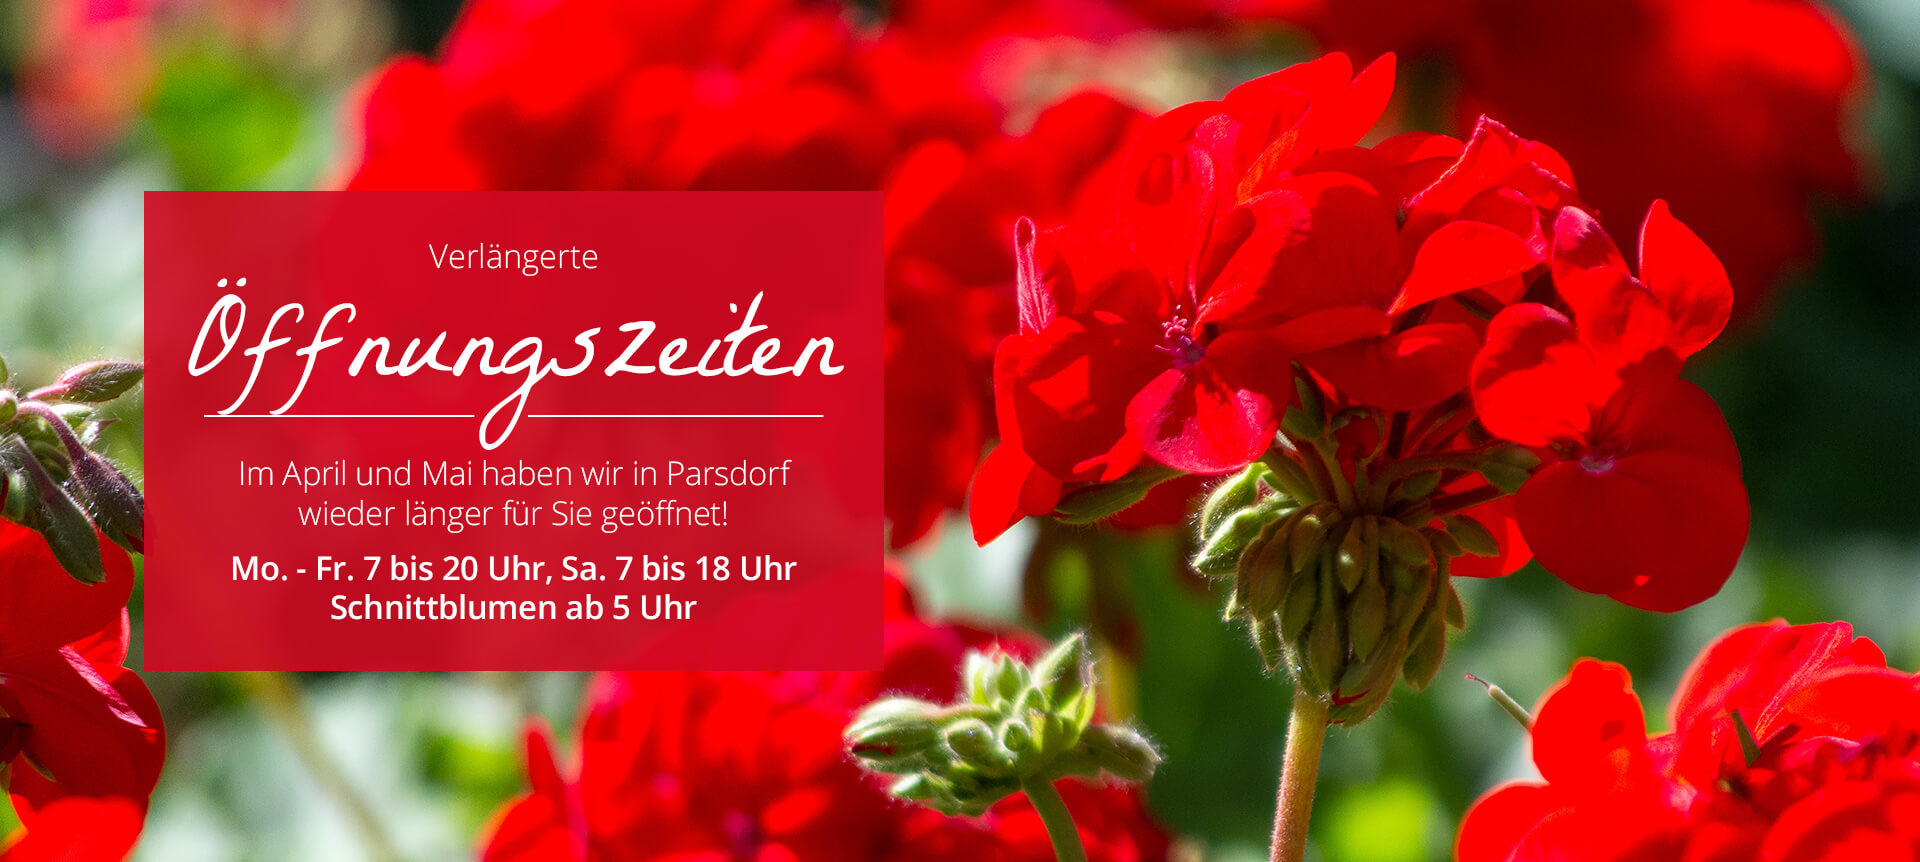 Bayerische Blumen Zentrale Saison Öffnungszeiten Parsdorf  